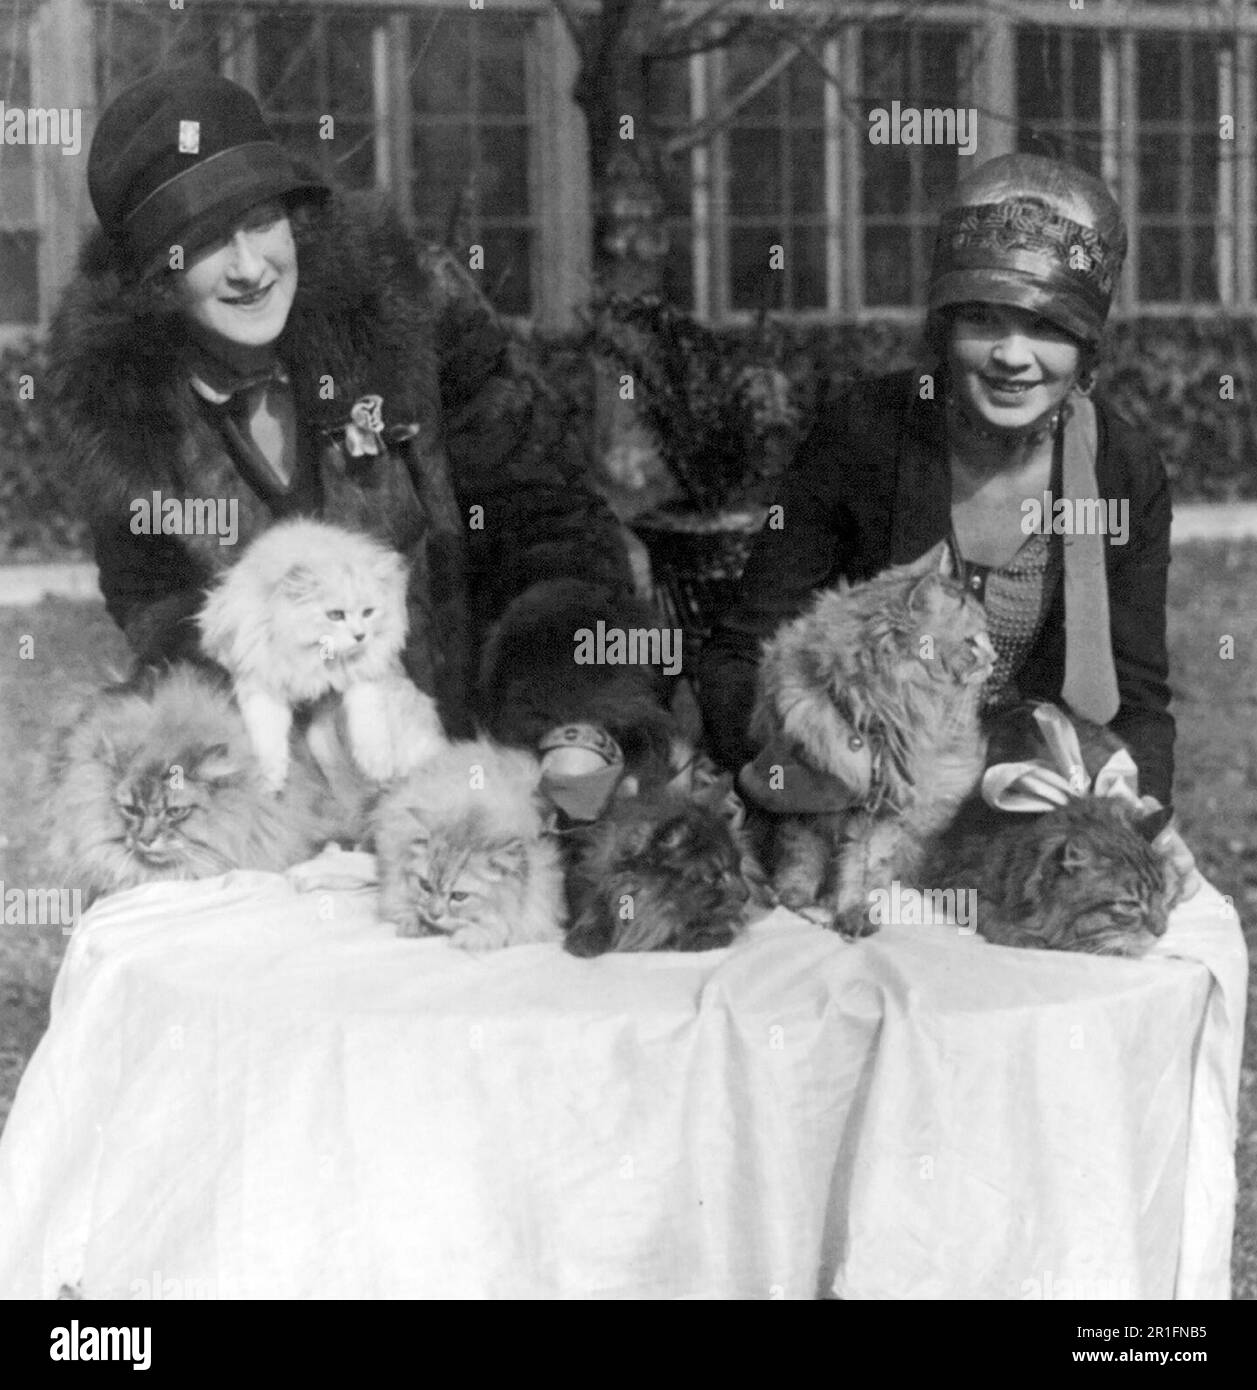 Photo d'archives: Le spectacle de chats de Washington s'ouvre à l'hôtel Wardman Park - Edna B. Doughty et Louisa Glogen avec certains des beaux chats entrés dans le spectacle ca. 1927 Banque D'Images